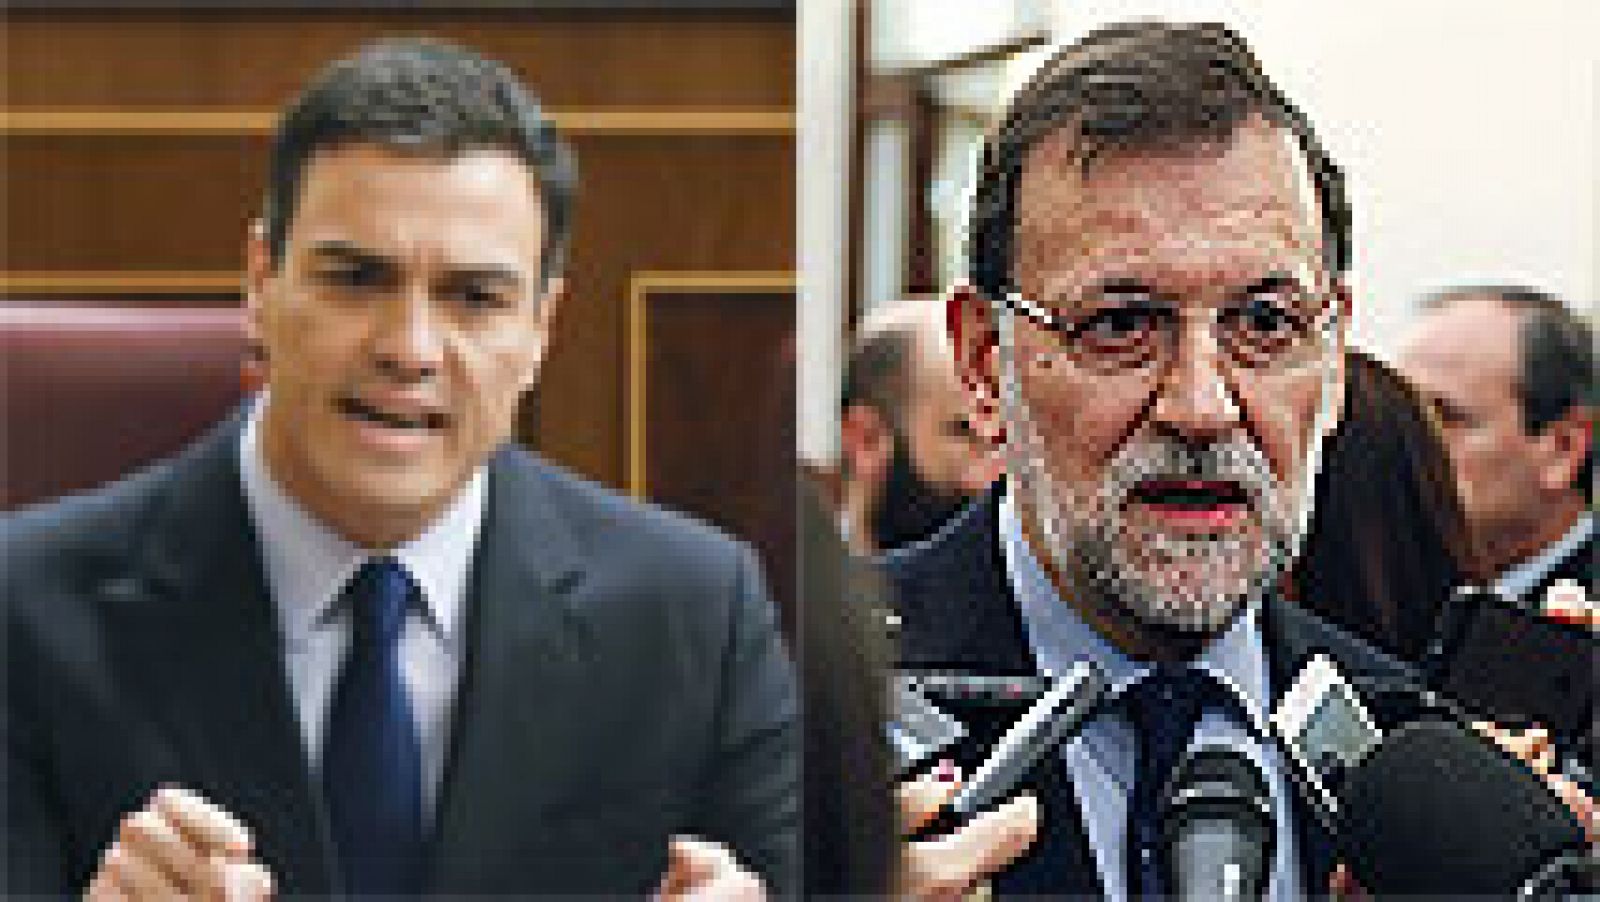 Mariano Rajoy pide a la justicia que cierre con la mayor rapidez posible el tema Bárcenas 